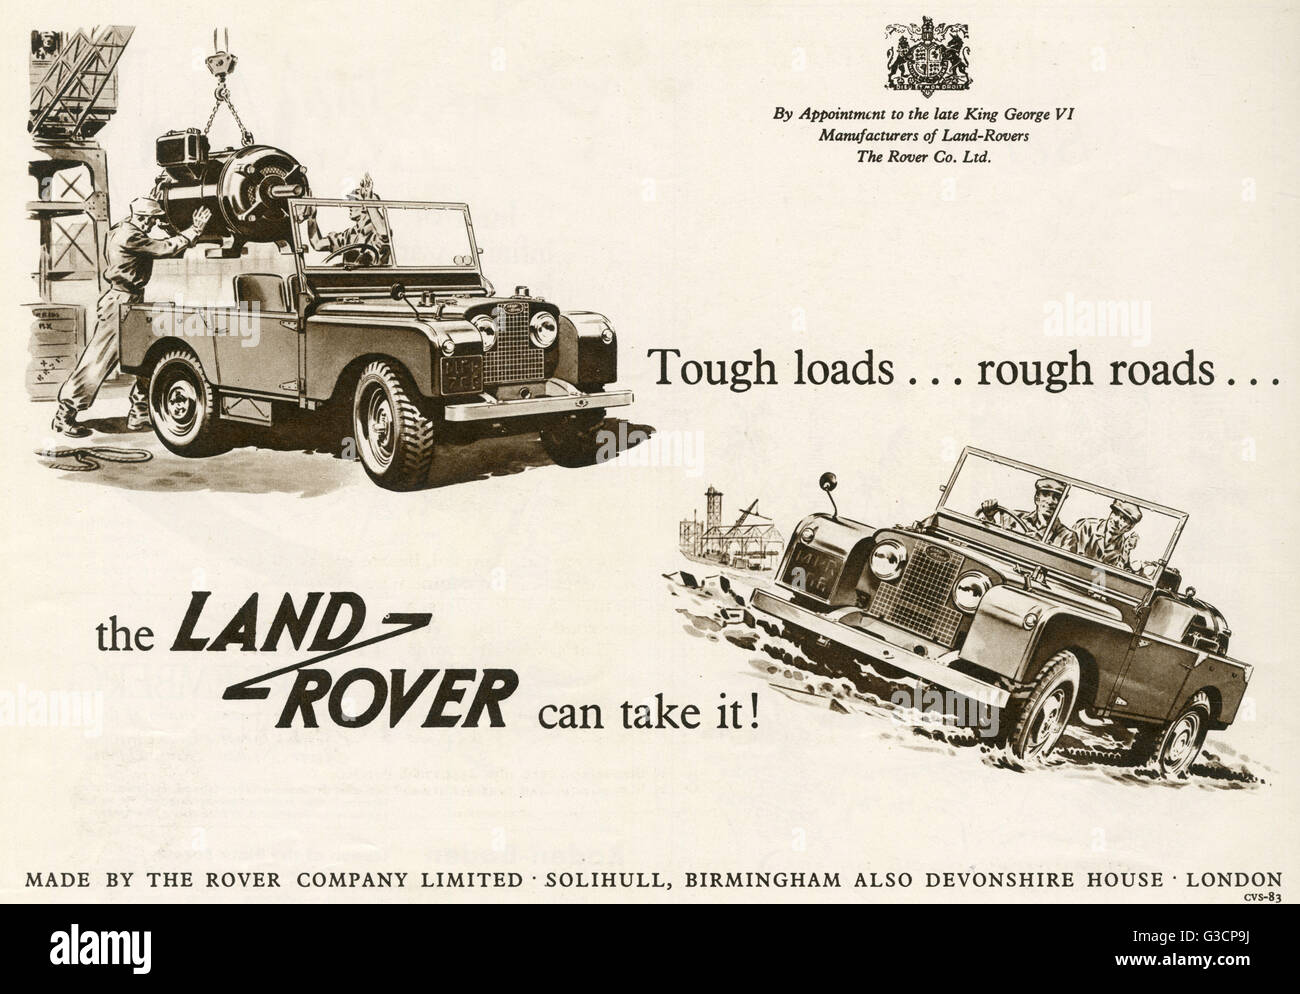 Carichi difficili, strade dissestate, Land Rover può prenderlo! Pubblicità per il British cross country veicolo Land Rover mostra che trasporta un carico pesante e rendendo veloce lavoro di guida attraverso paludosa del terreno. Data: 1953 Foto Stock